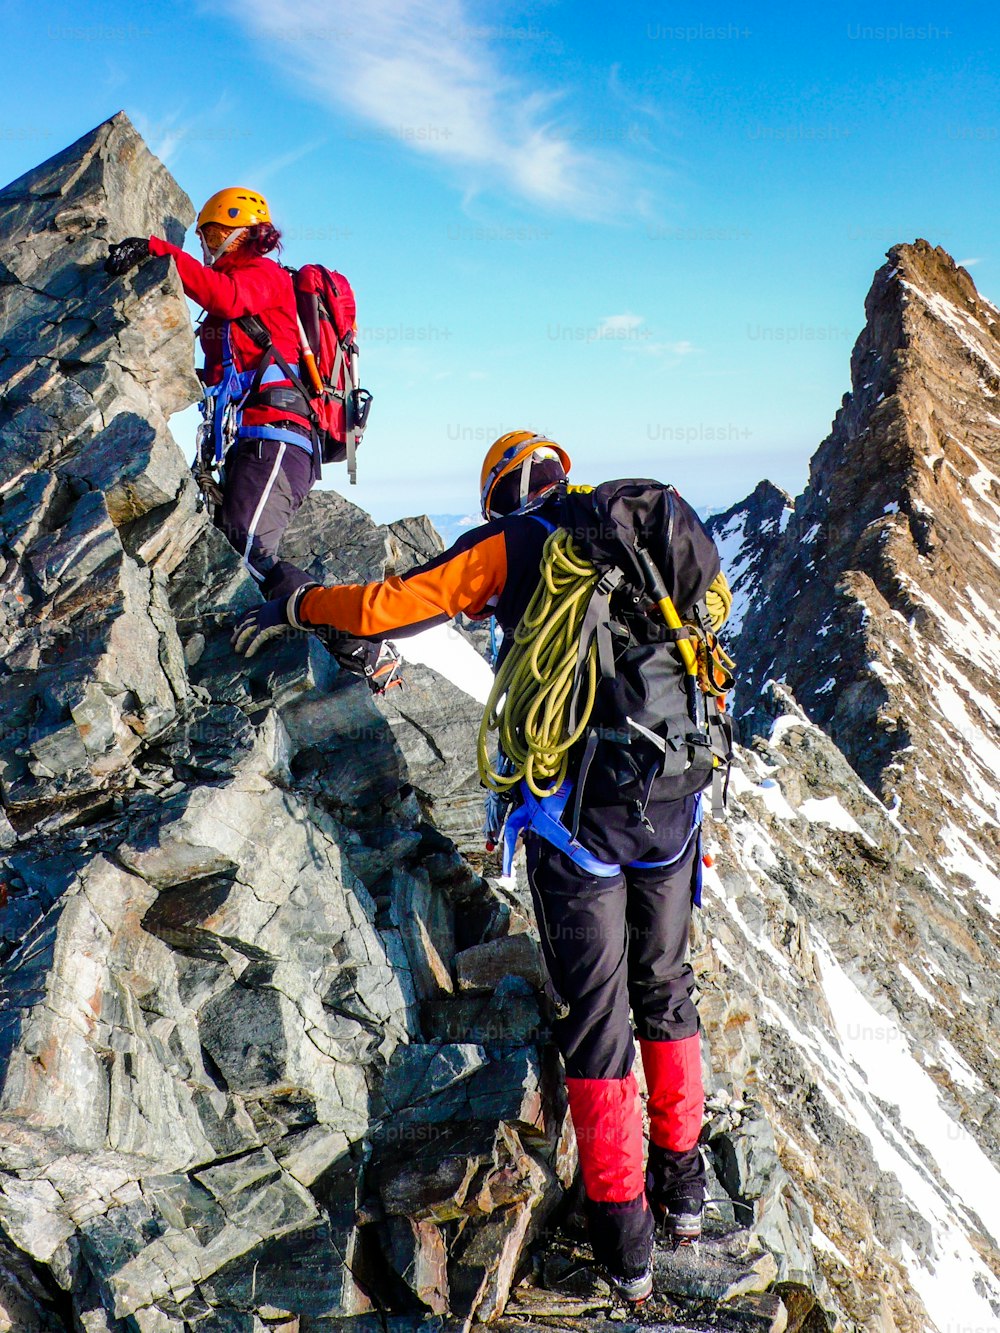 alpinista masculino e feminino em uma crista de cume rochosa exposta a caminho de um pico de alta montanha alpina perto de Zermatt, nos Alpes suíços